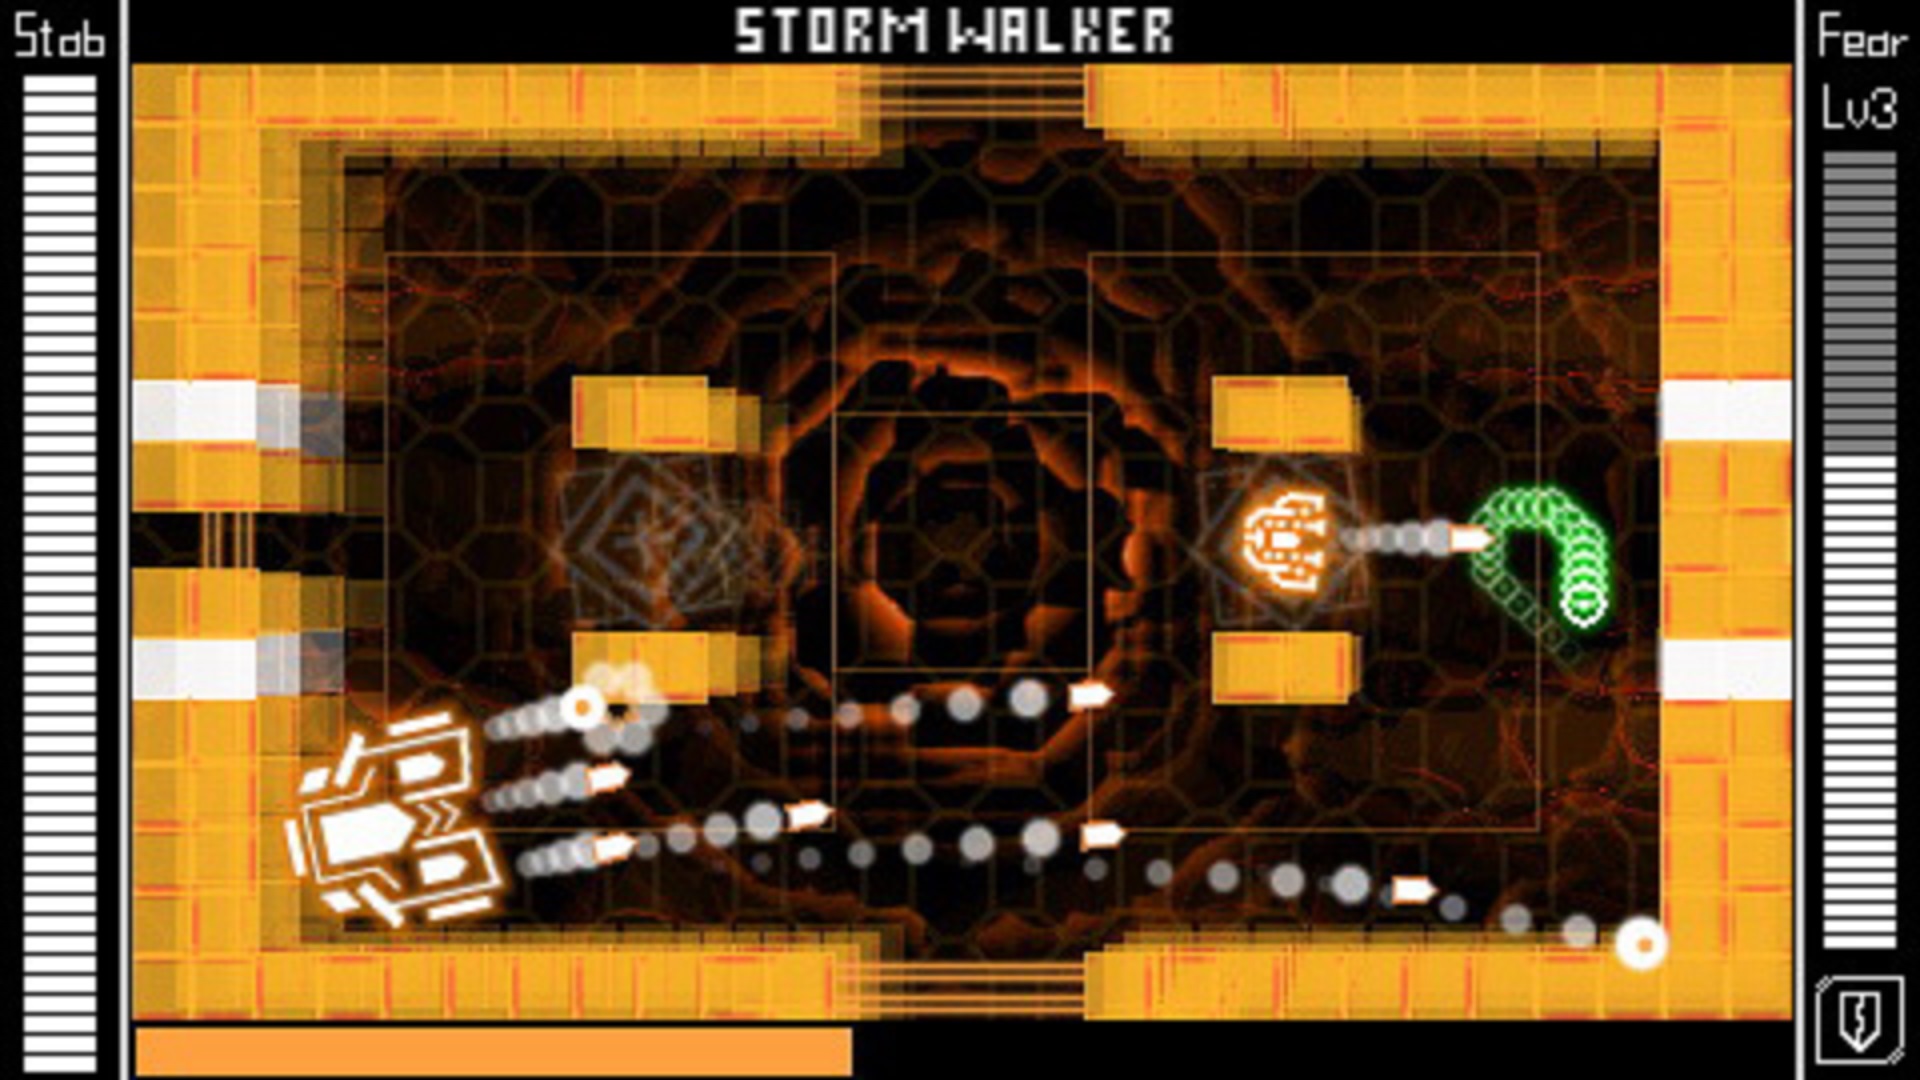 Brain Storm : Tower Bombarde screenshot